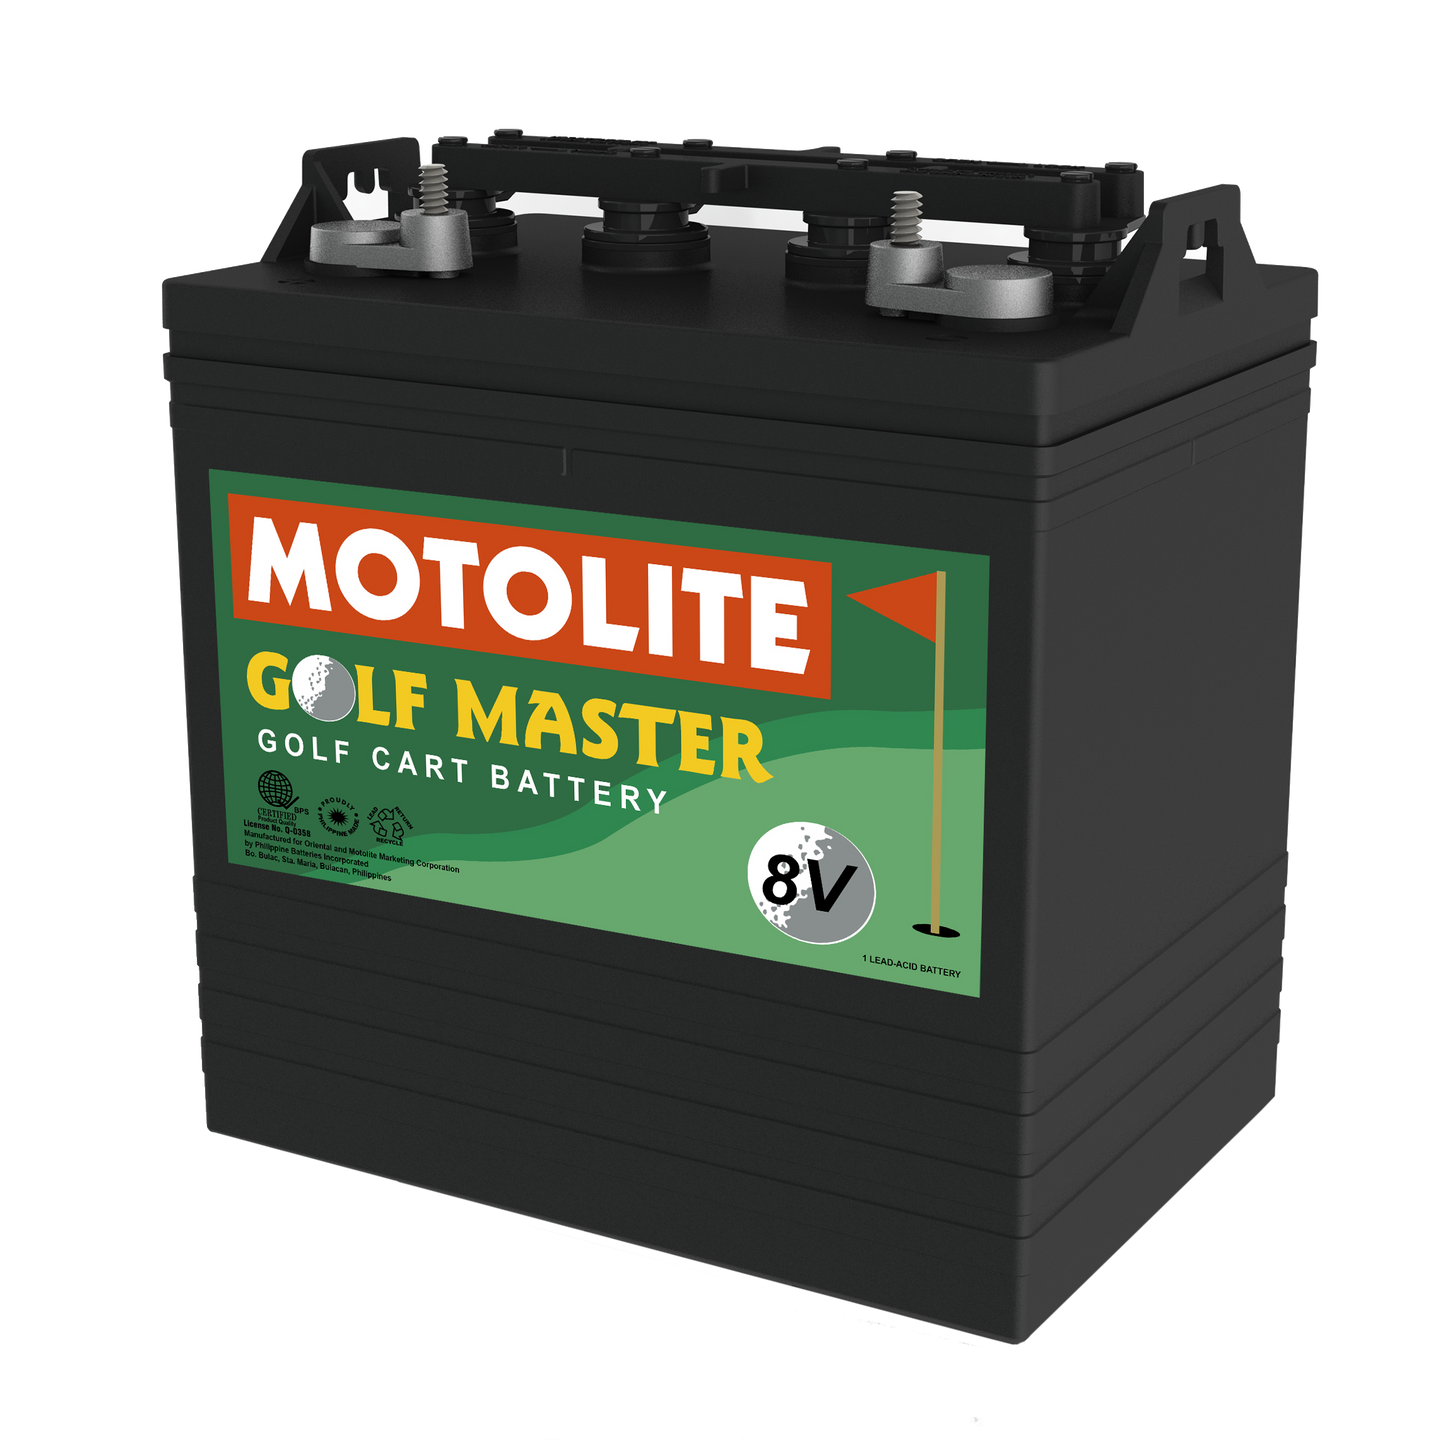 Motolite Golfmaster (Flat-Pasted)